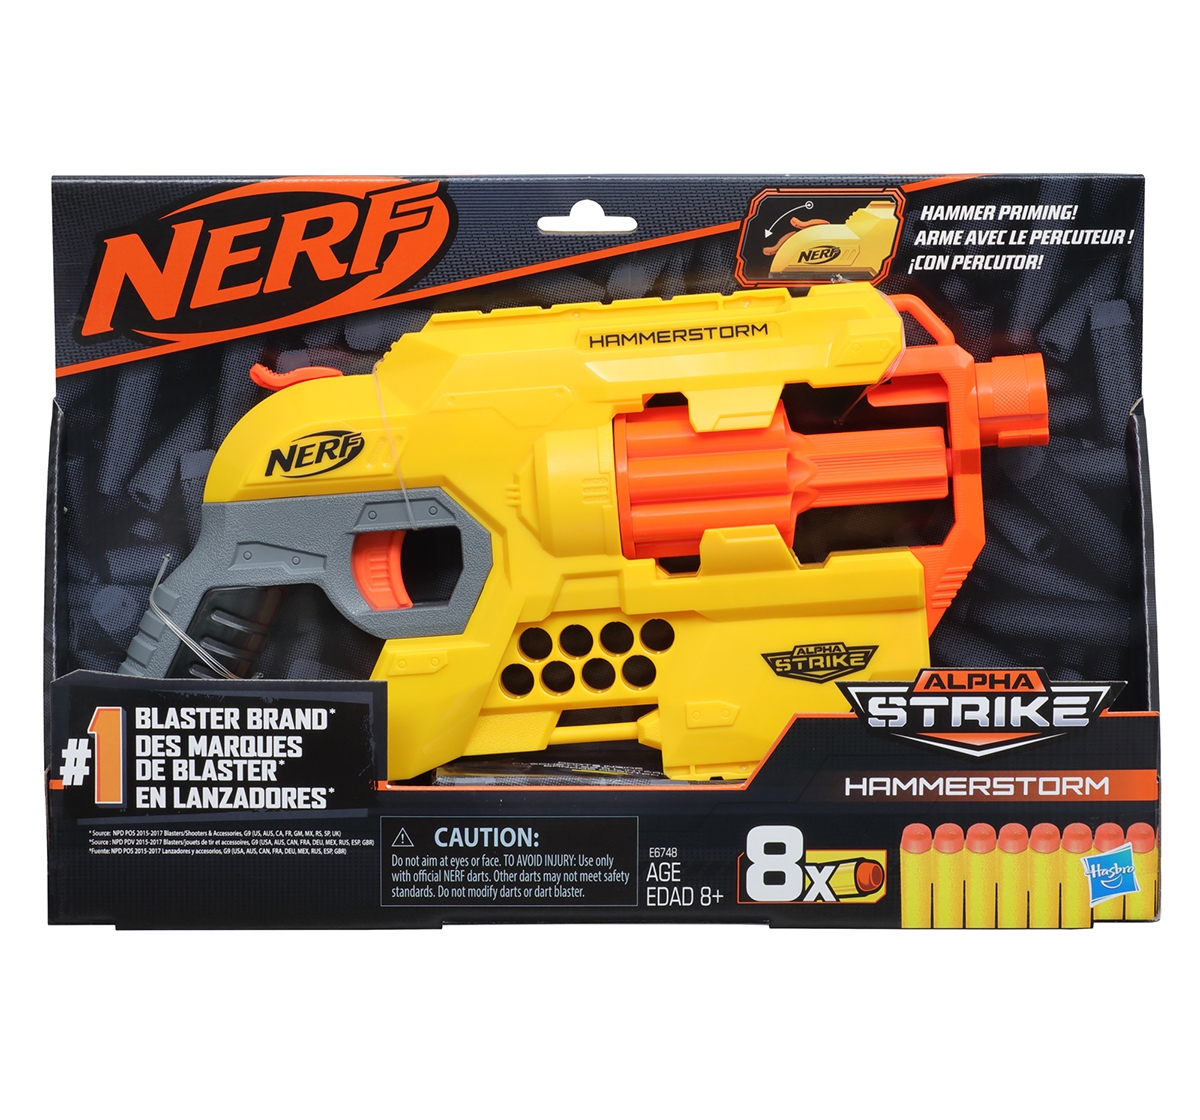 NERF Alpha Strike Hammerstorm Blaster with Hammer-Priming Action, 8-Dart Drum, 8 Darts, Multicolor, 8Y+